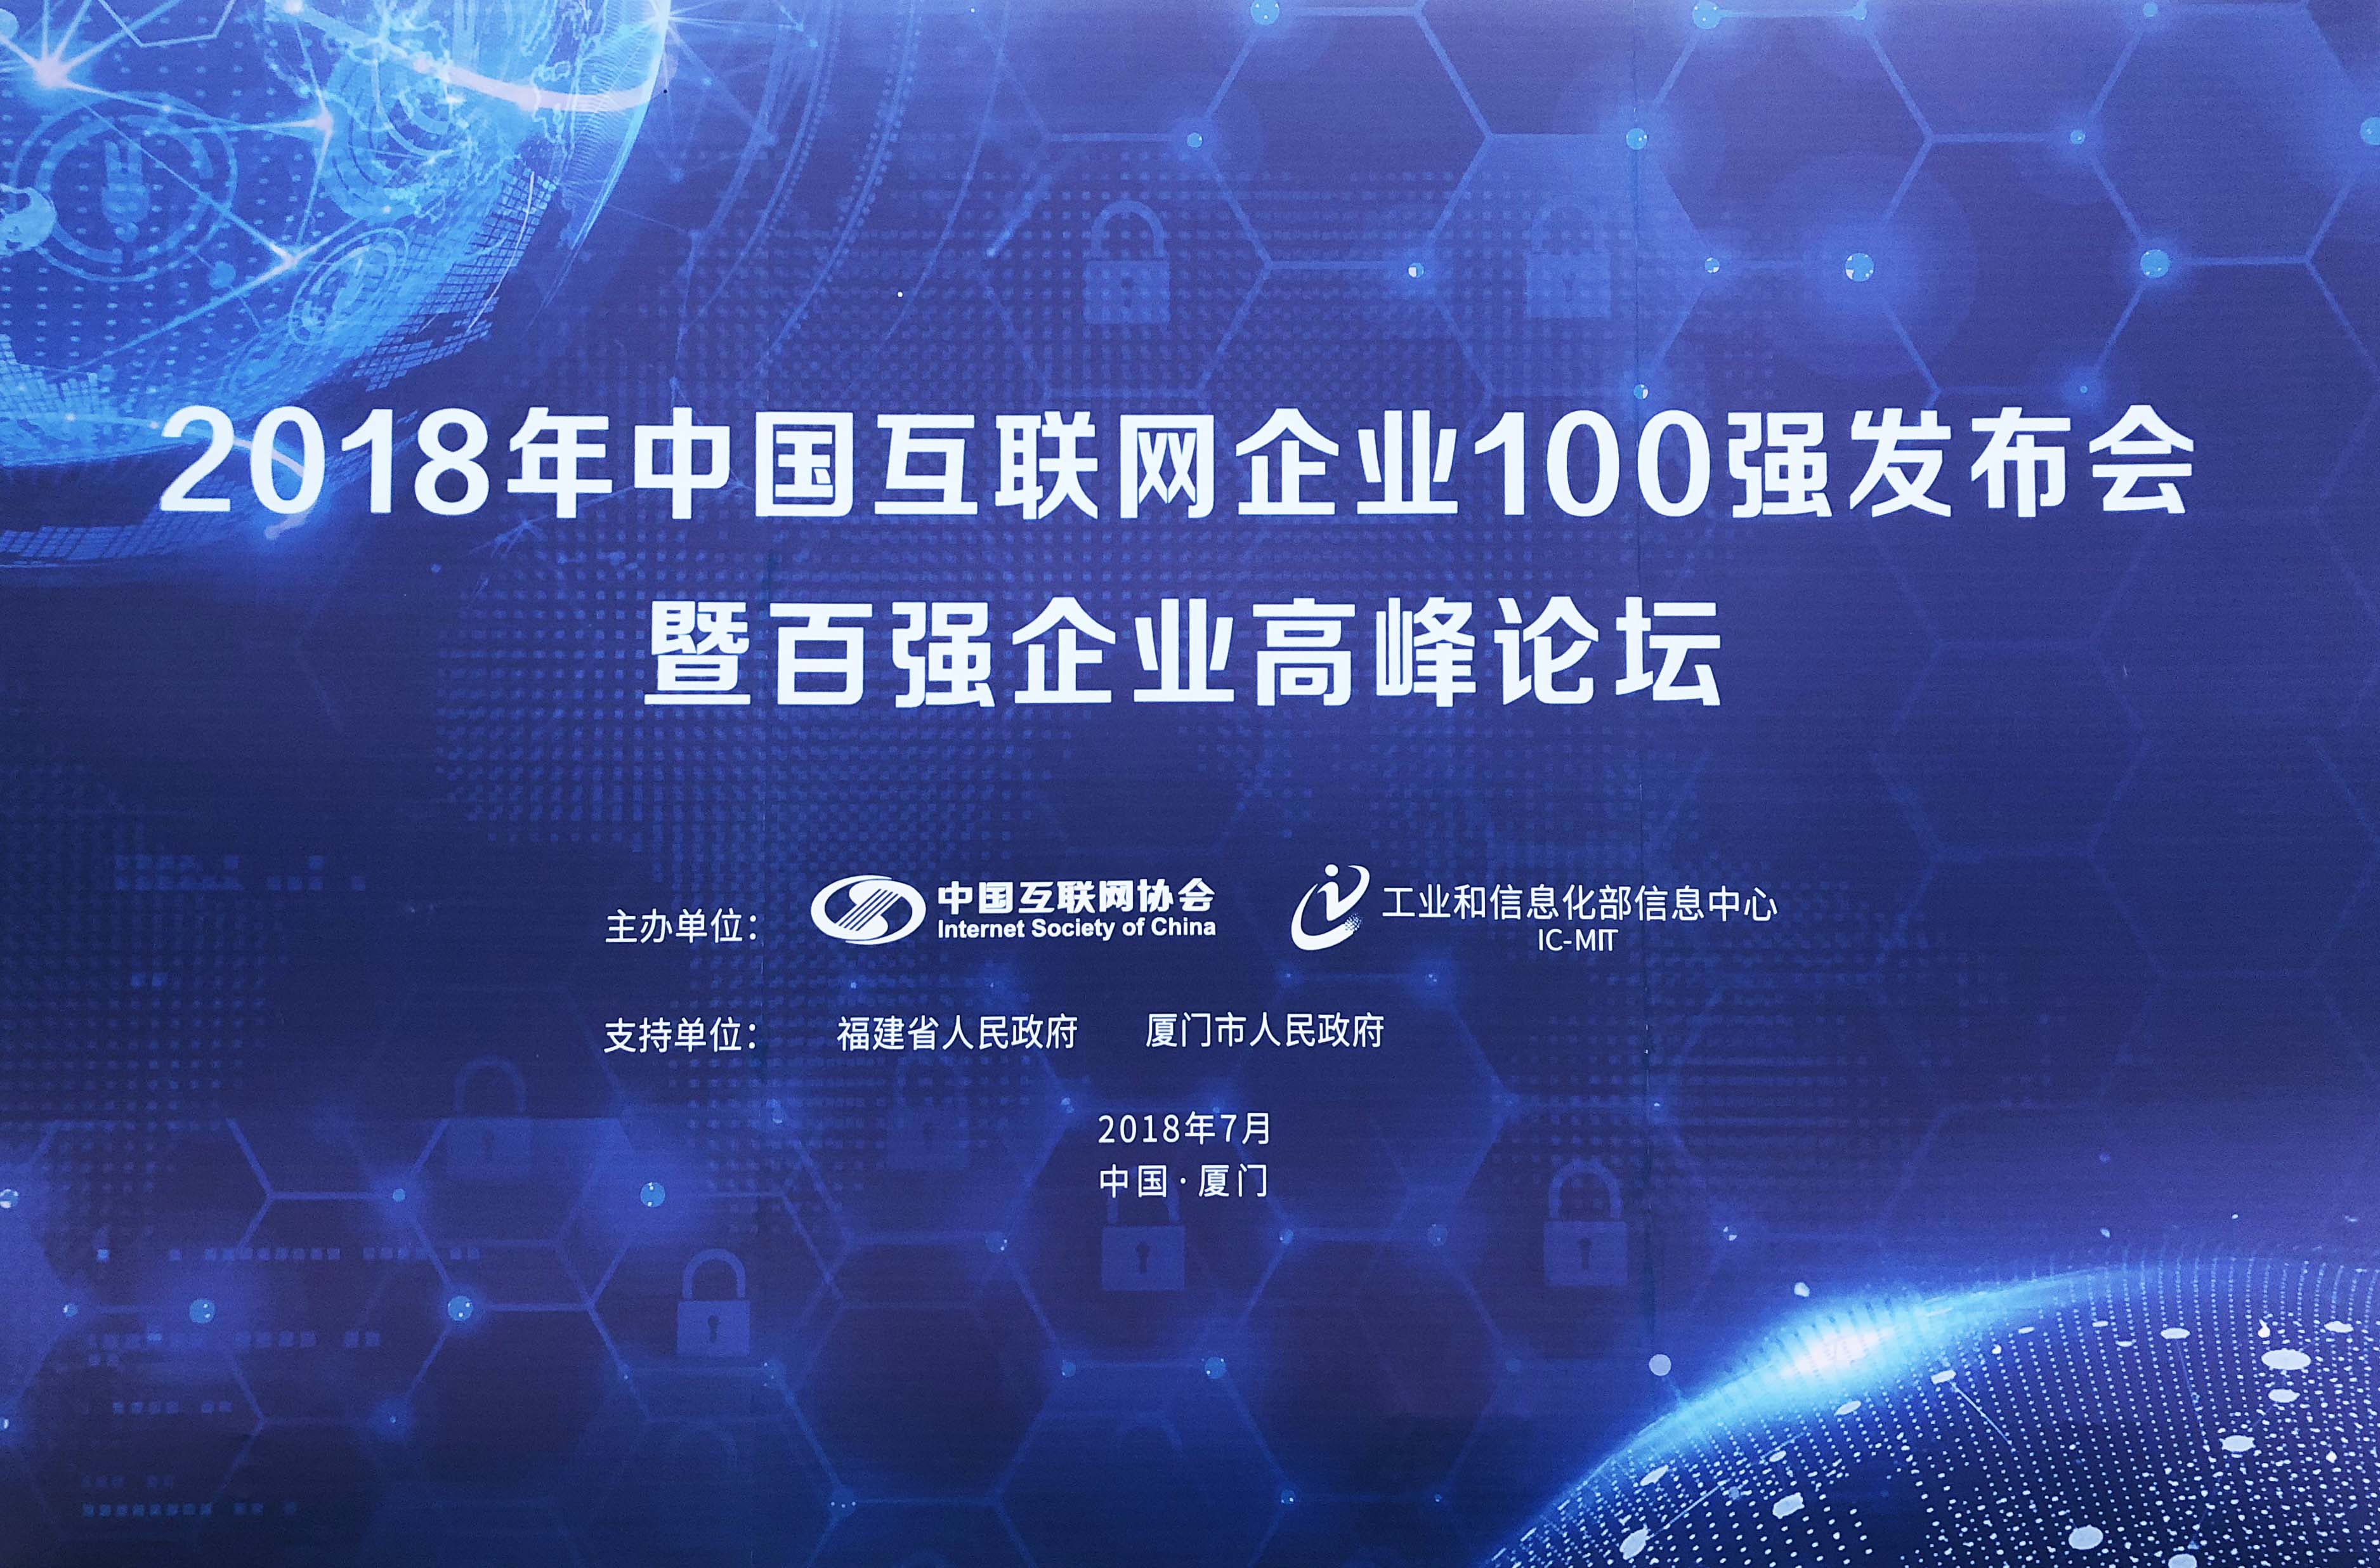 2018年中国互联网企业100强发布会暨百强企业高峰论坛